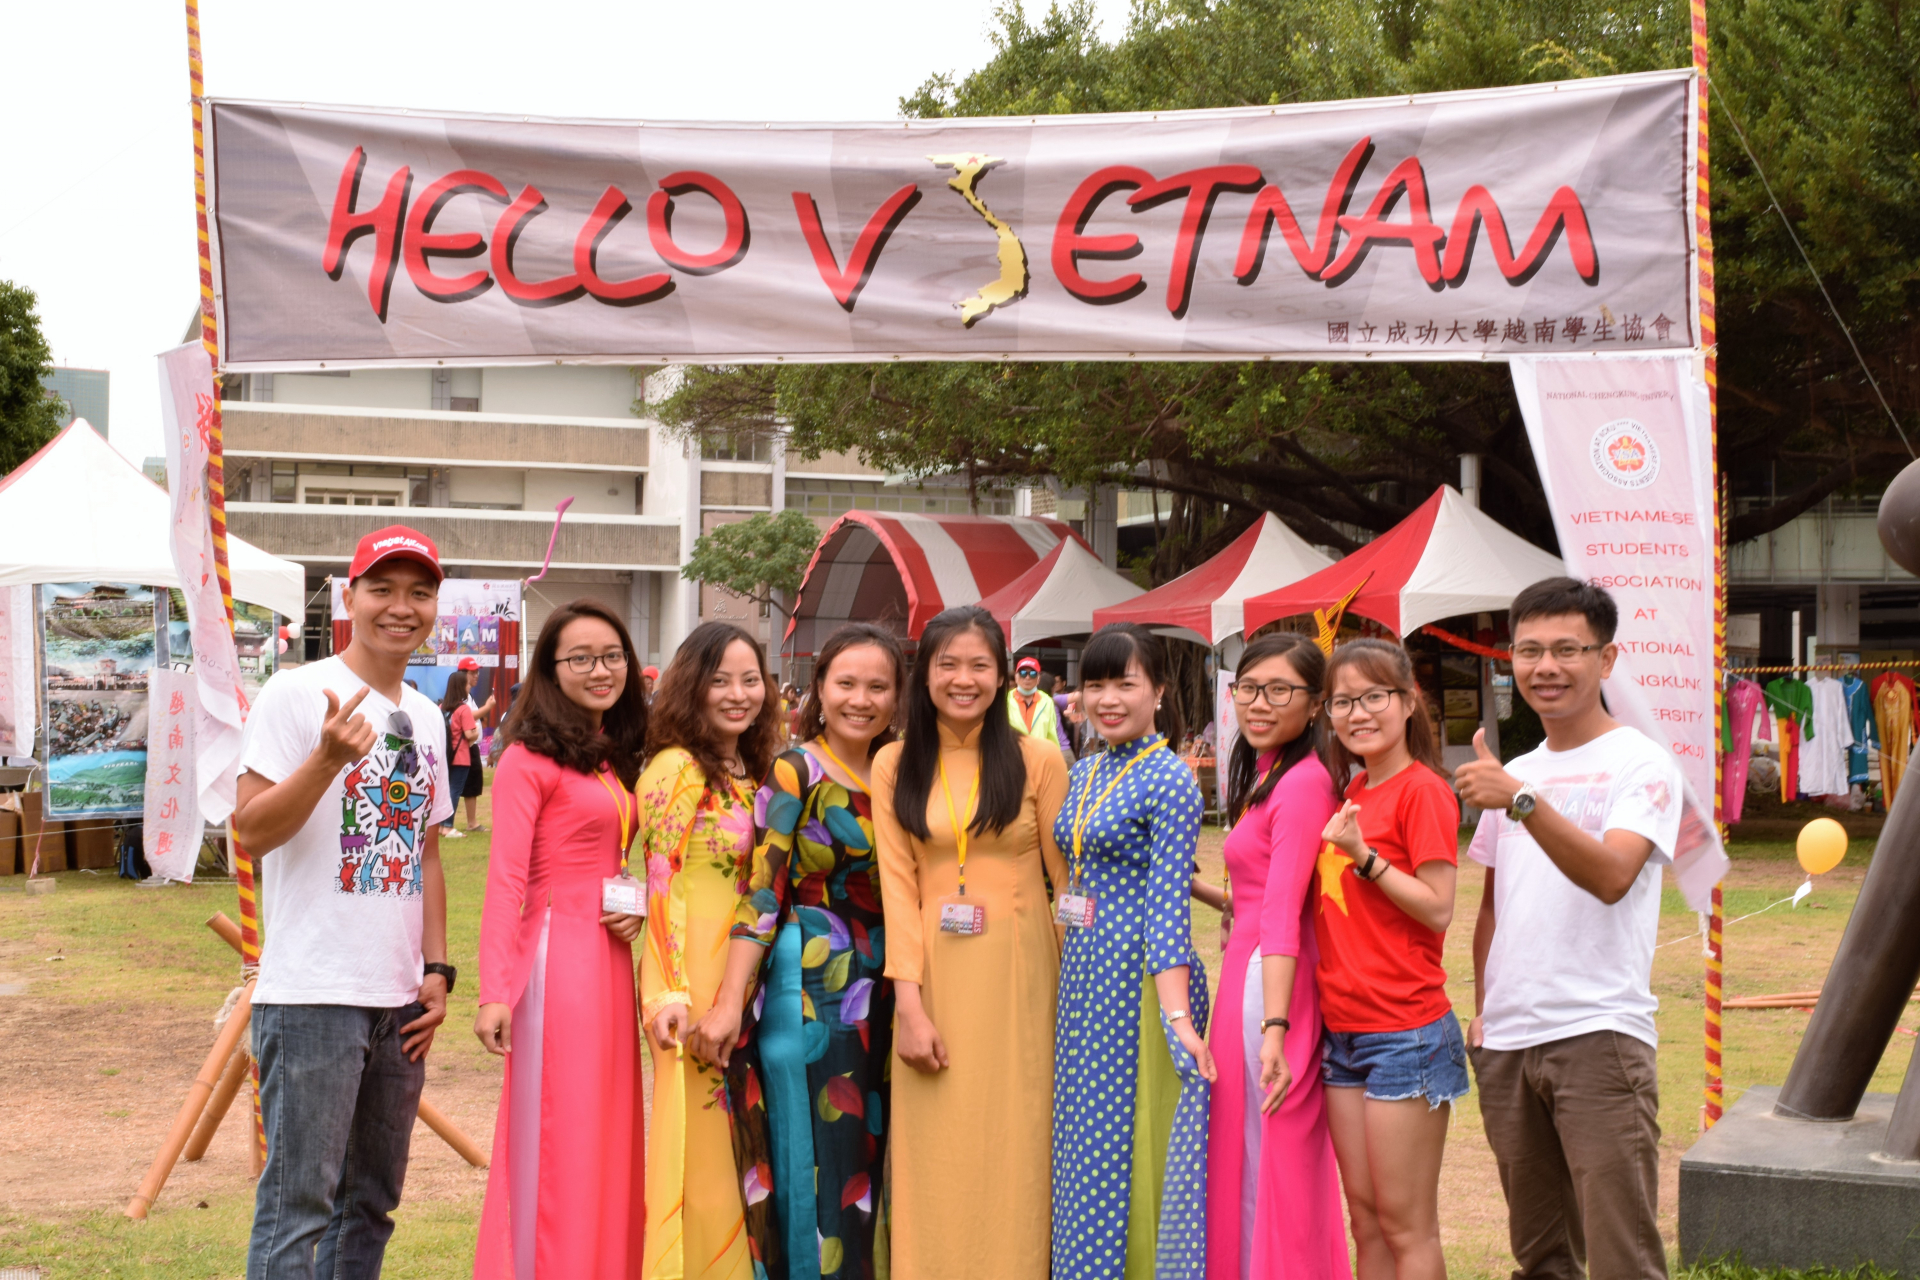 Du học sinh Việt tại Đài Nam: Mang văn hóa Việt tới bạn bè thế giới 0